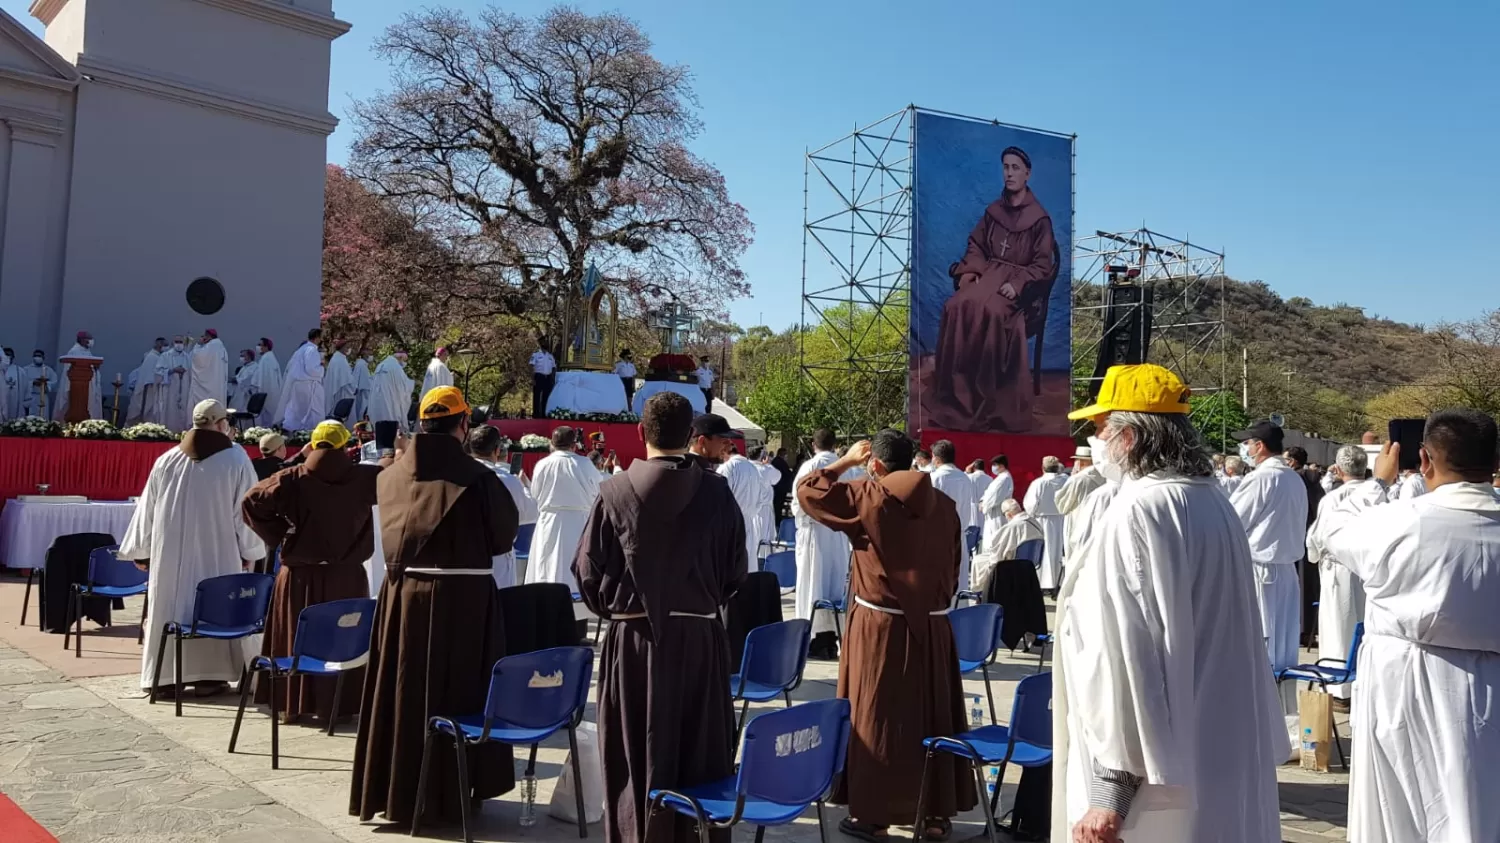 MOMENTO EMOTIVO. Se descubrió una enorme imagen de Esquiú, al momento de su beatificación. Foto de LA GACETA / Magena Valentié